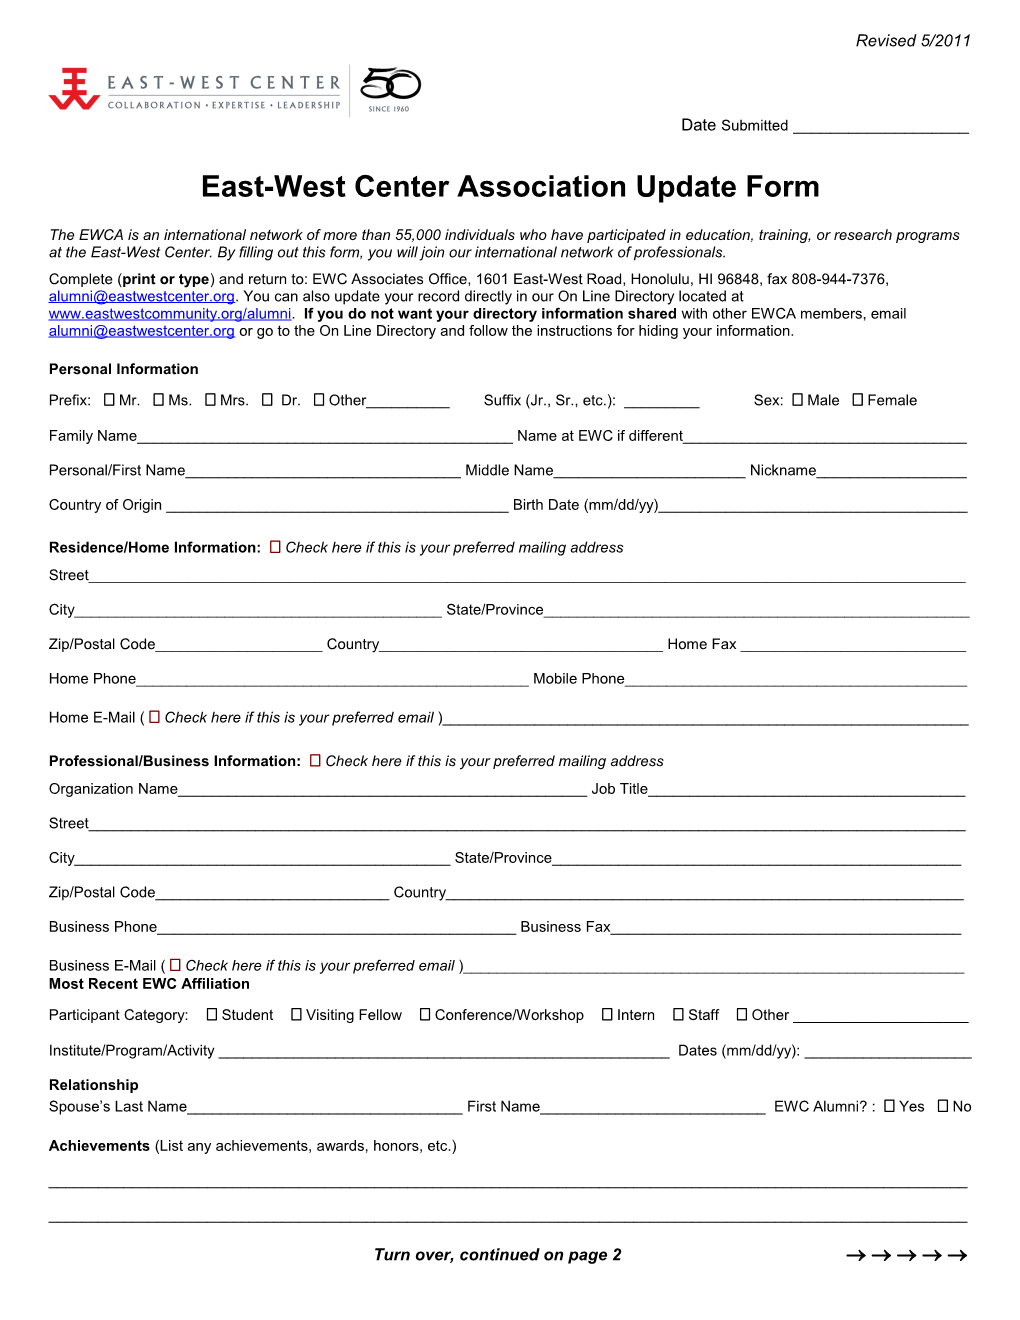 East-Westcenter Association Update Form